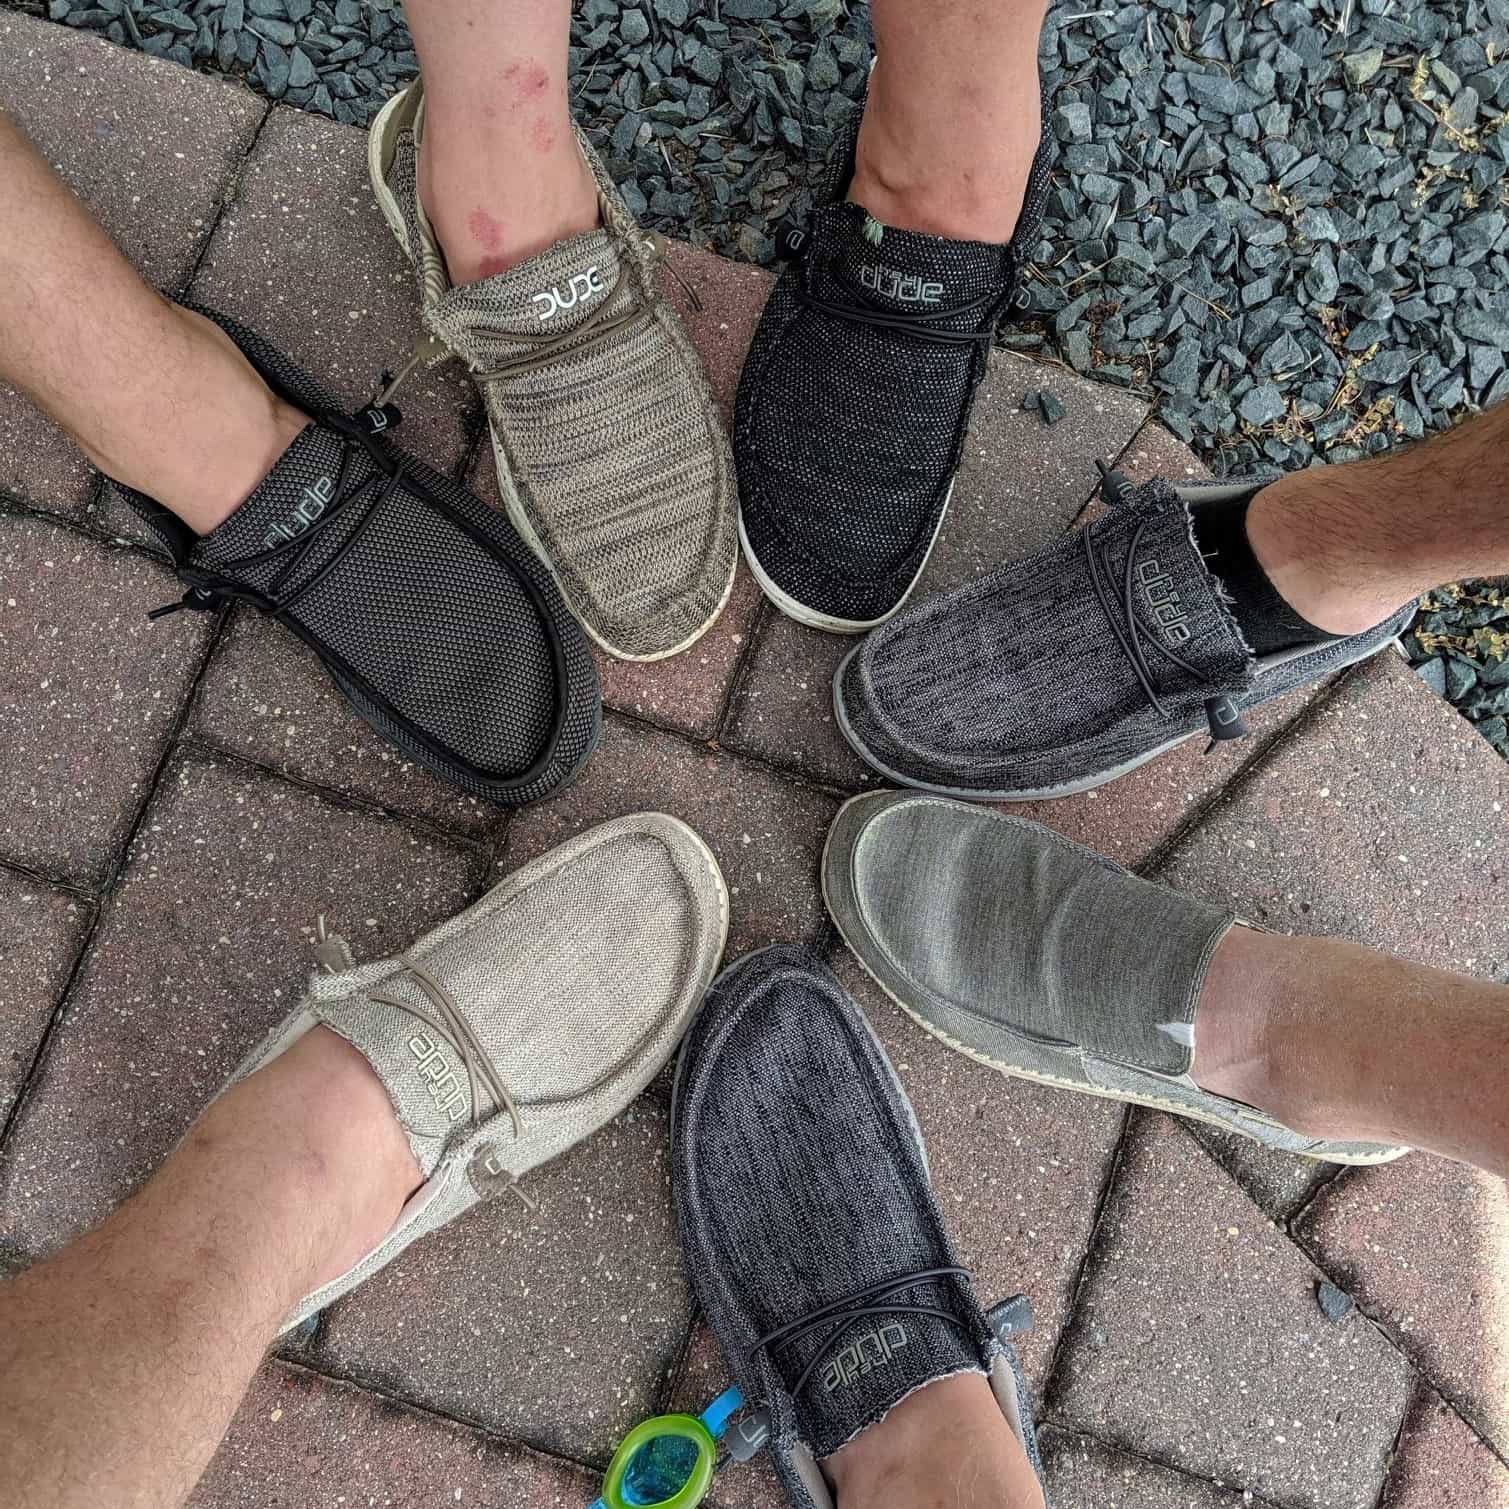 dudes shoes